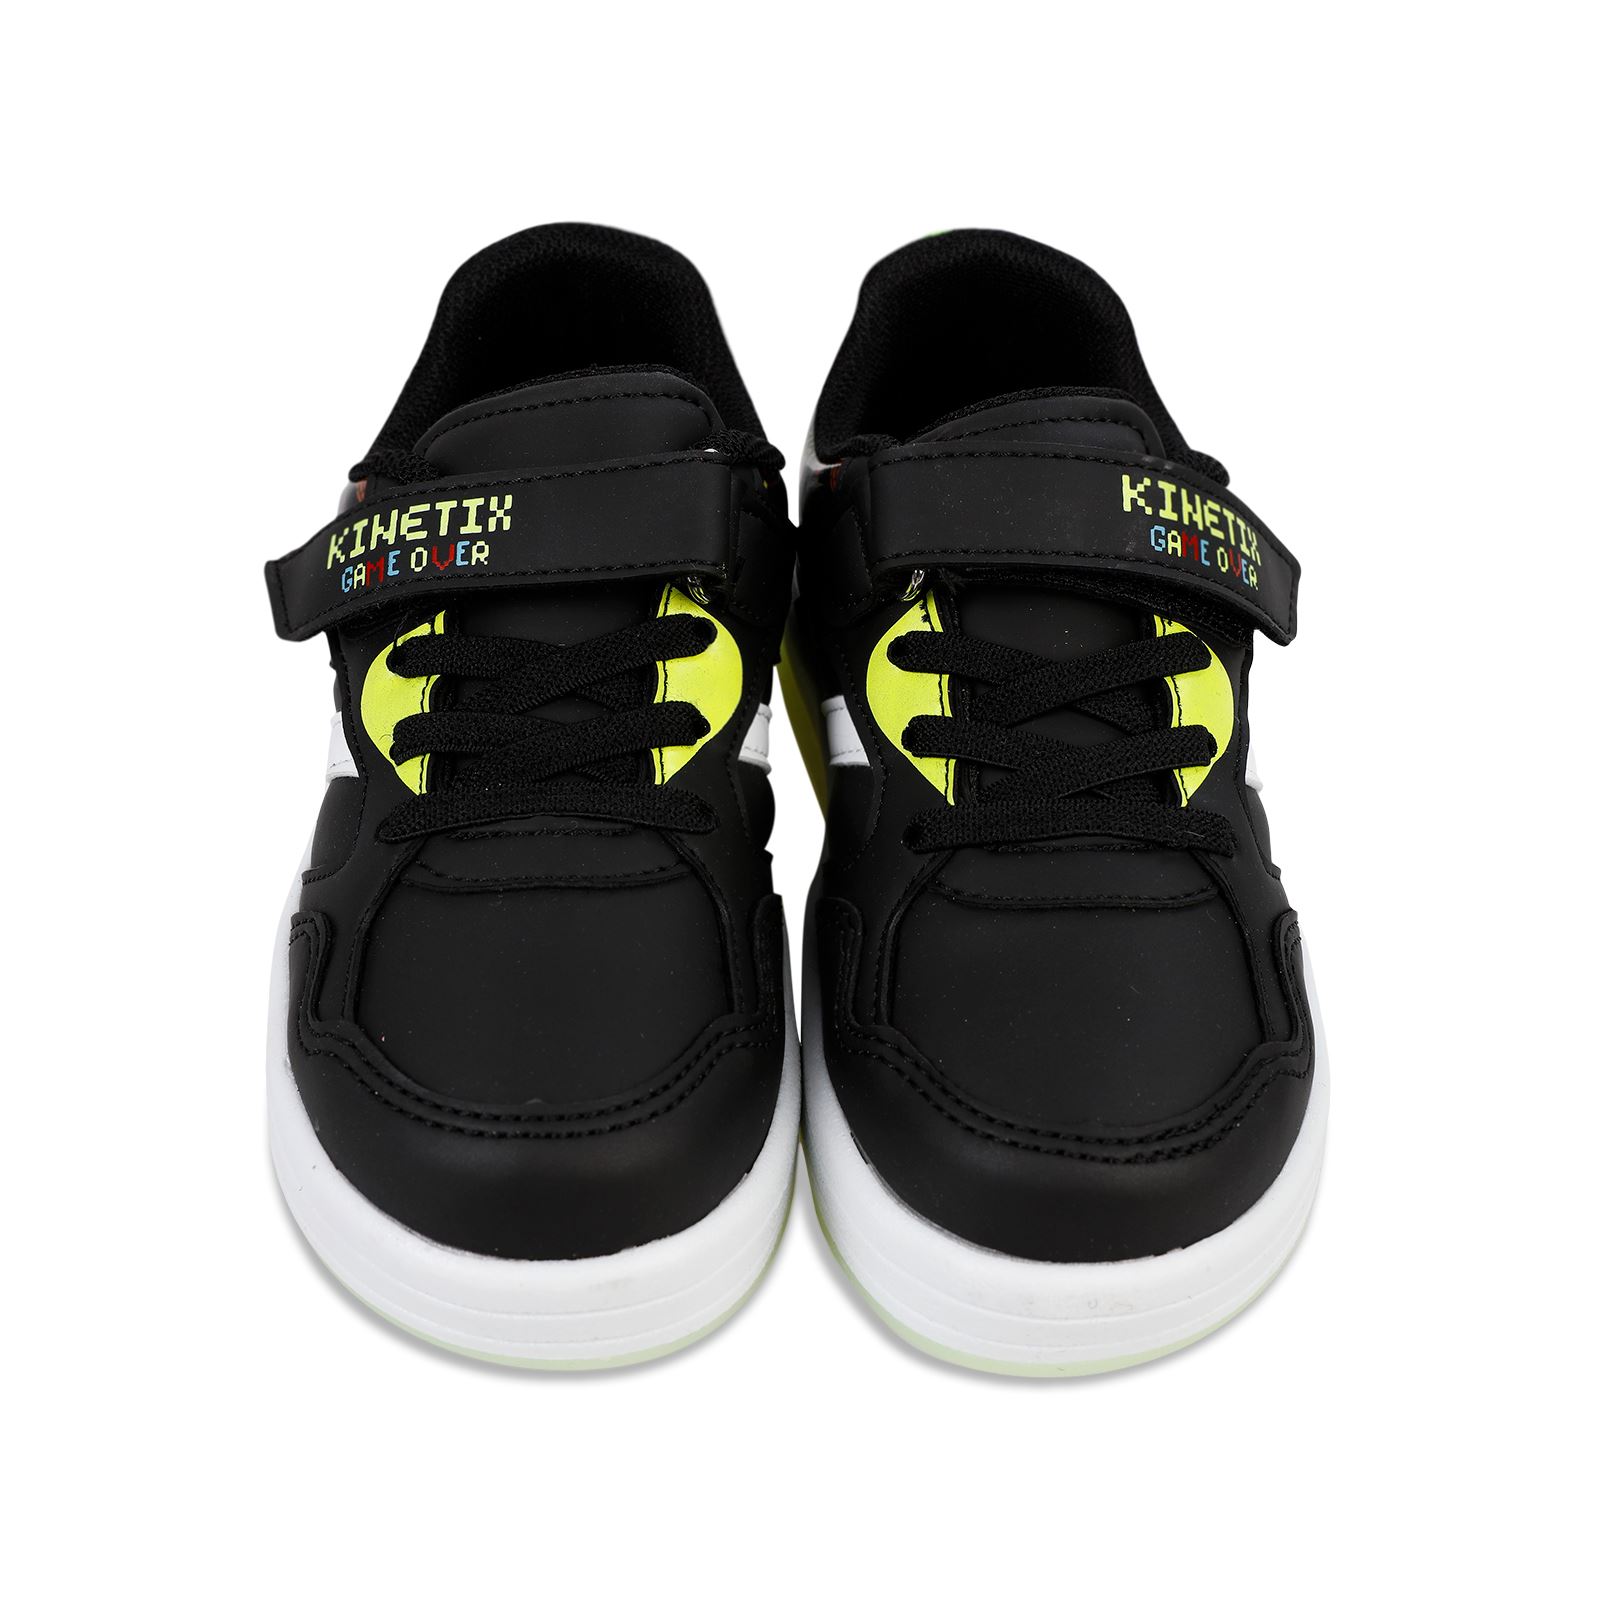 Kinetix Erkek Çocuk Işıklı Spor Ayakkabı 26-30 Numara Siyah